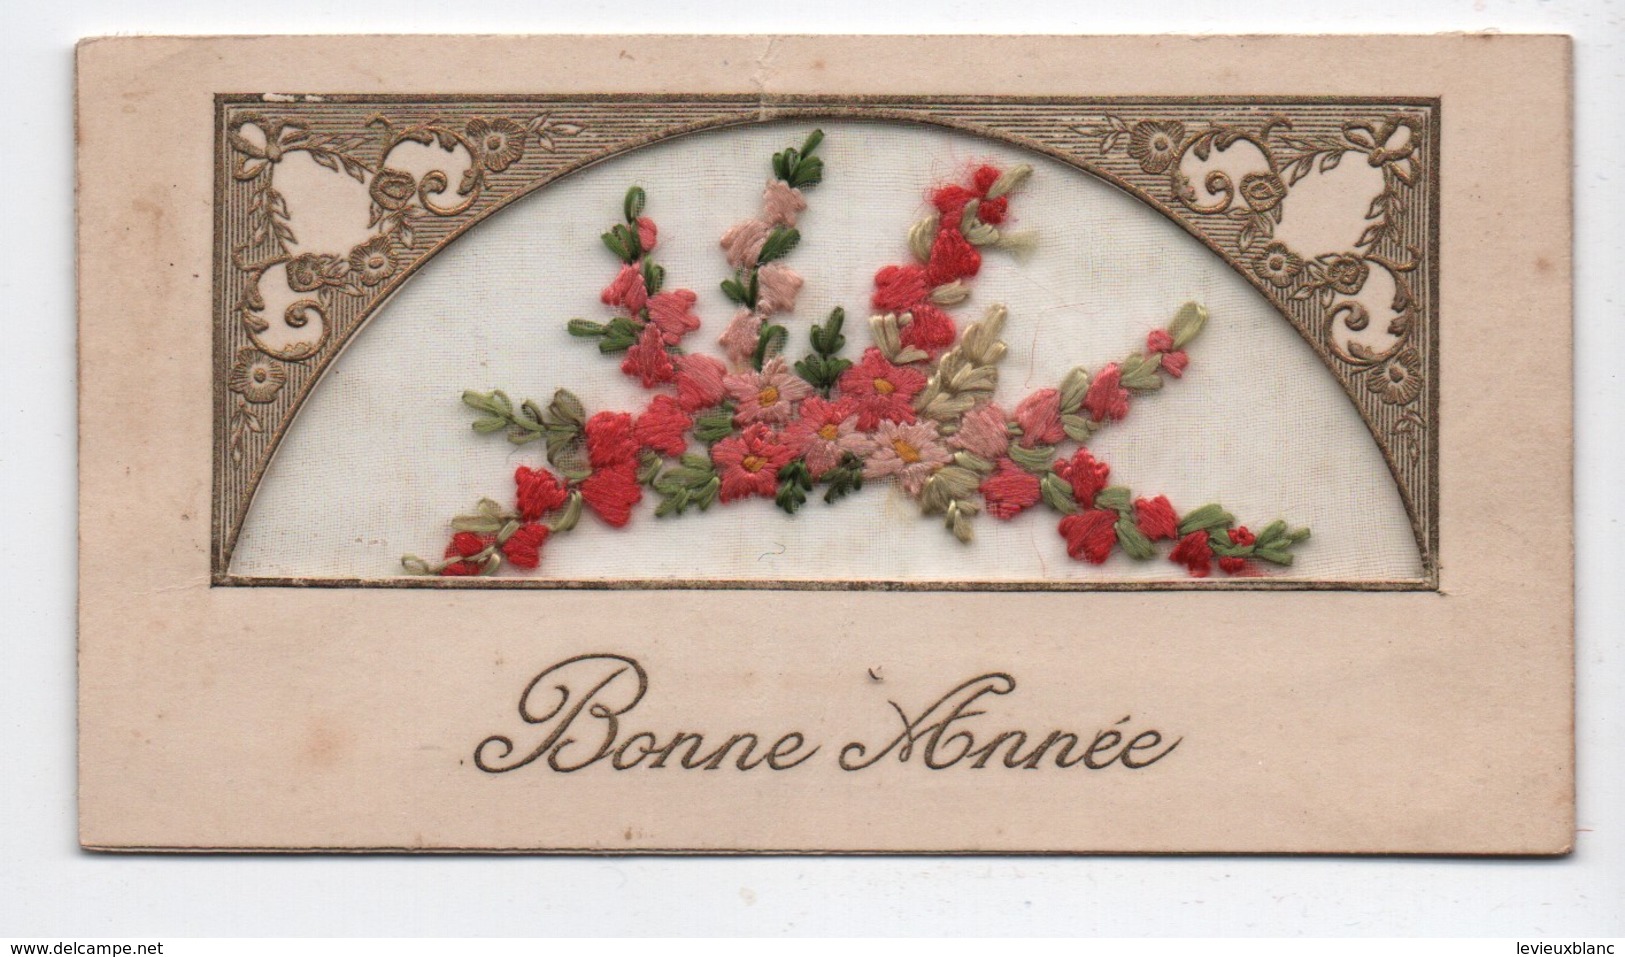 Carte de Voeux/ BONNE ANNEE/ Composition florale  en tissu/ Brodée sur tulle/Renée SABOURDIN/vers 1930     CVE149